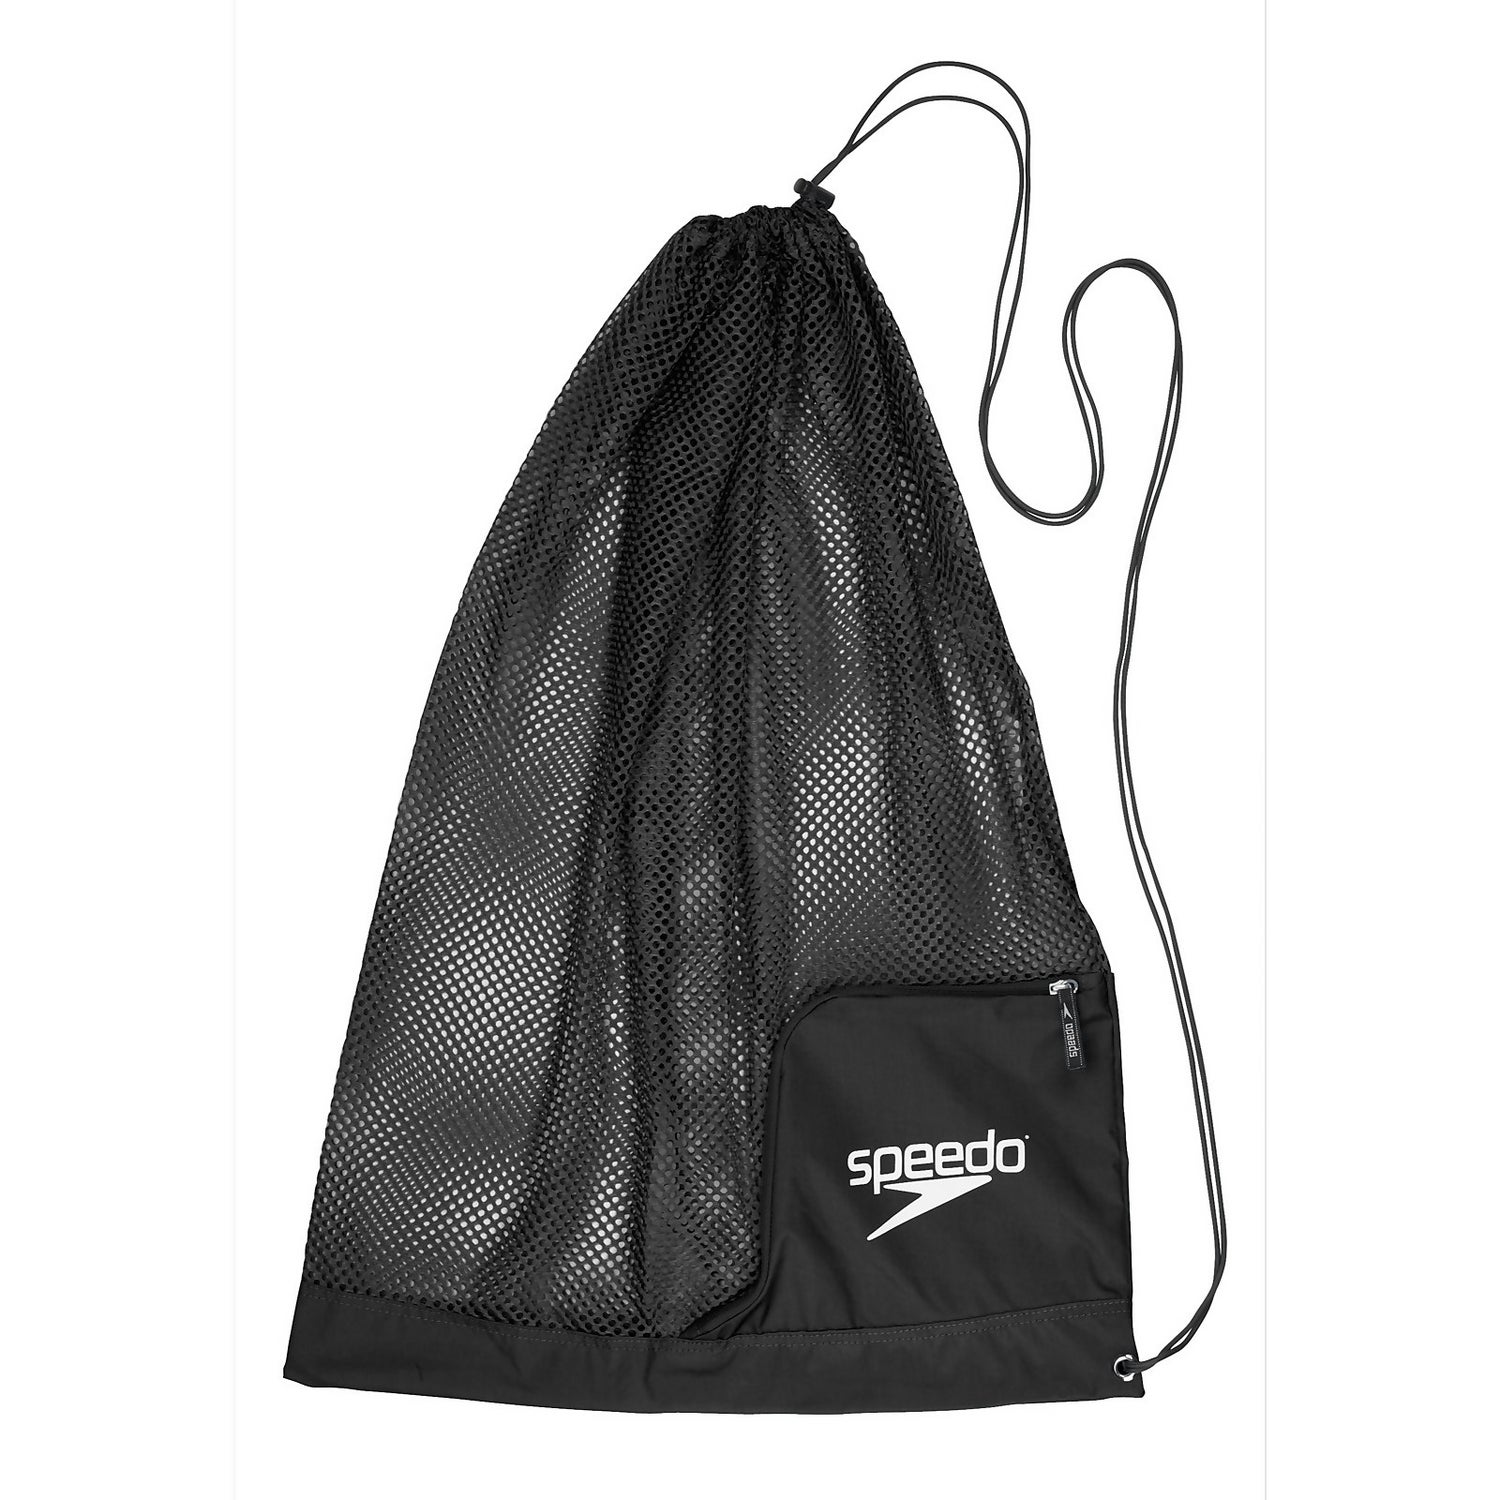 Speedo Deluxe Ventilator Mesh Bag - Black